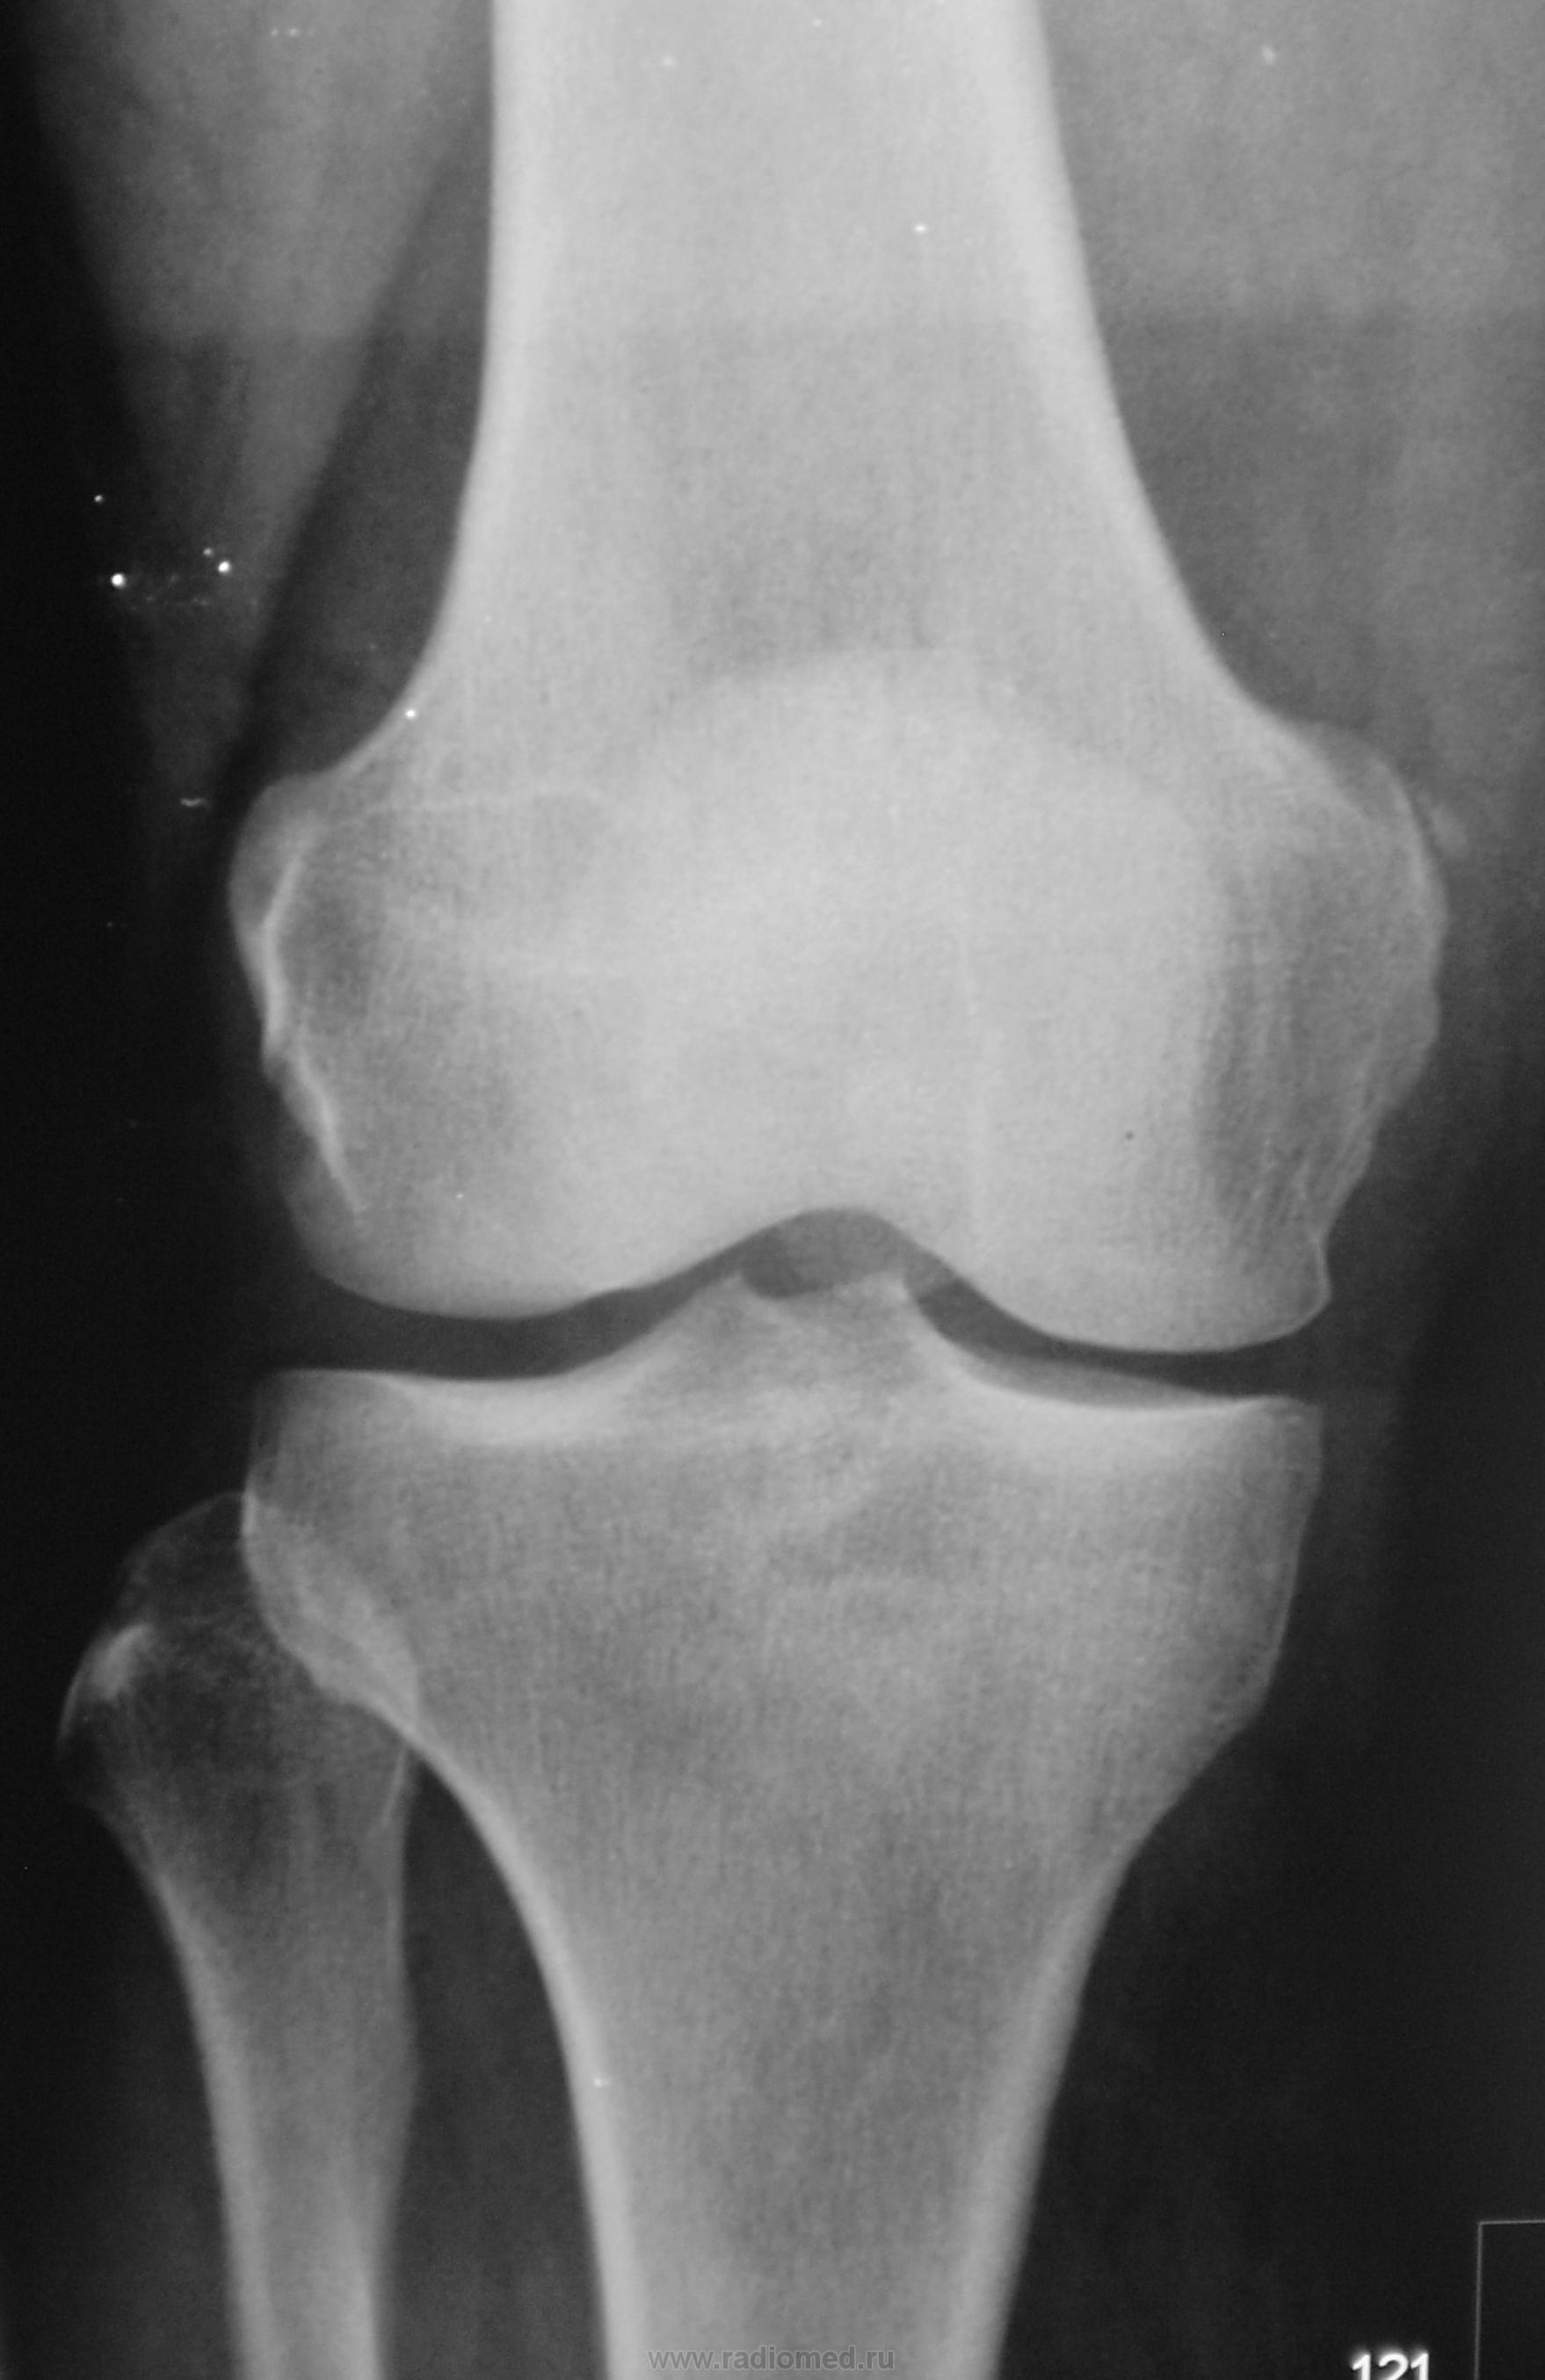 Рентген колена. Болезнь Пеллегрини Штида. Пеллегрини Штида рентген. Пателлофеморальный артроз коленного сустава рентген.